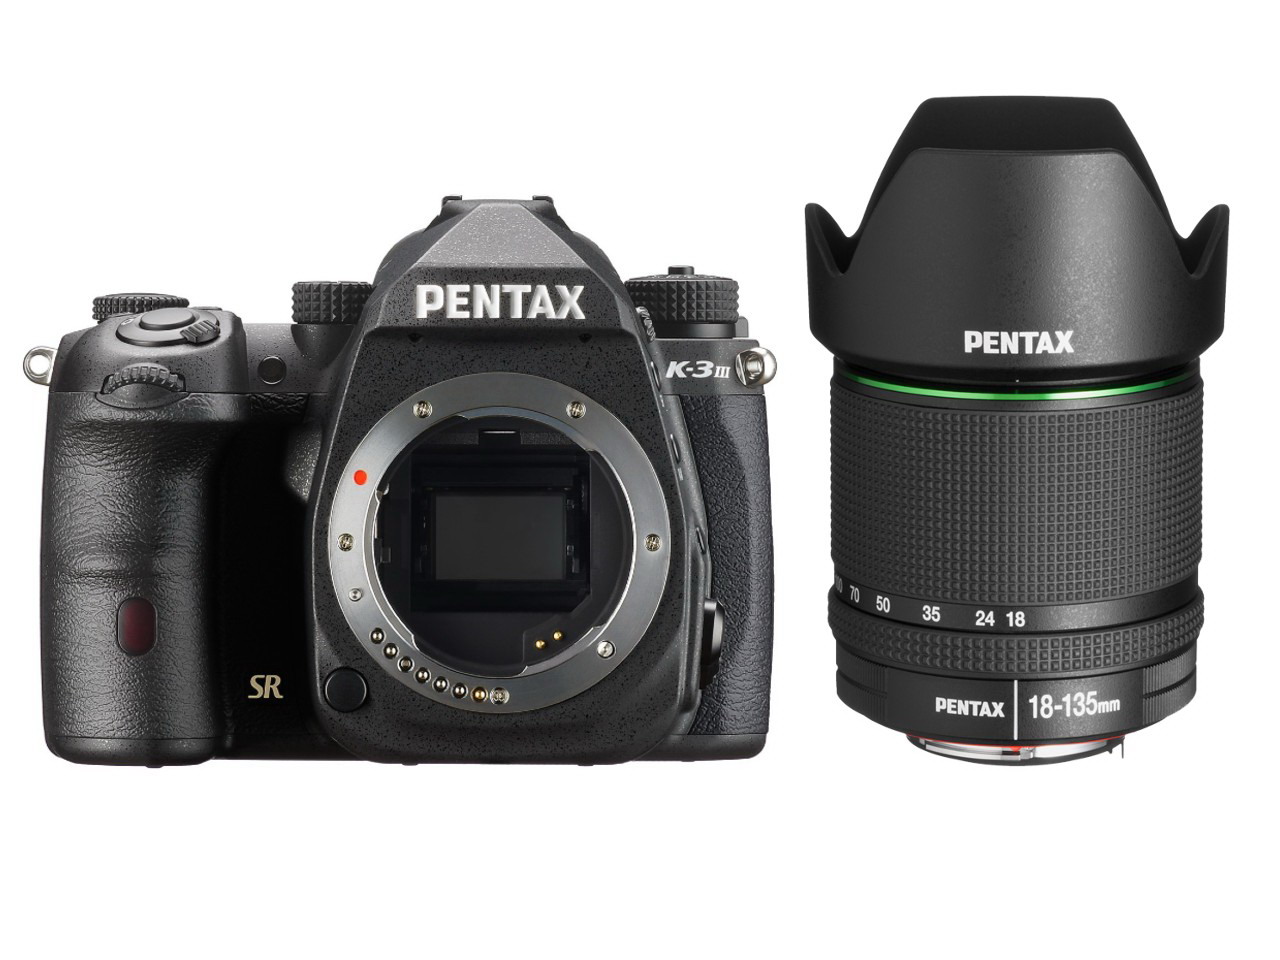 Pentax K-3 Mark + Pro Pentax III 18-135mm - Shop AS Fovi 